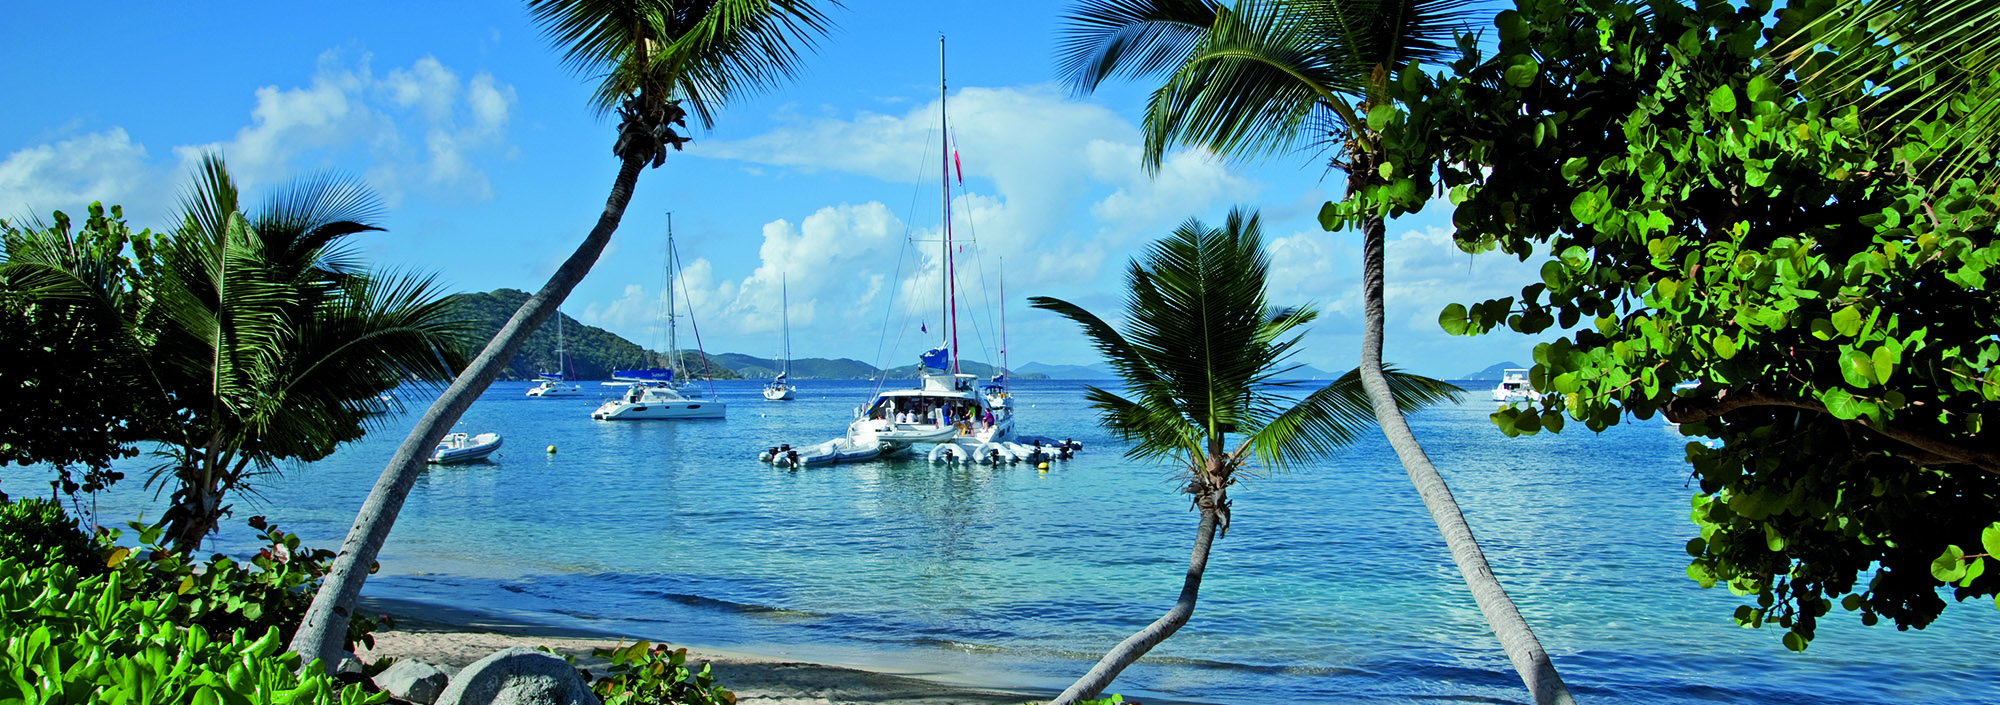 Segelboote auf Cooper Island, British Virgin Islands